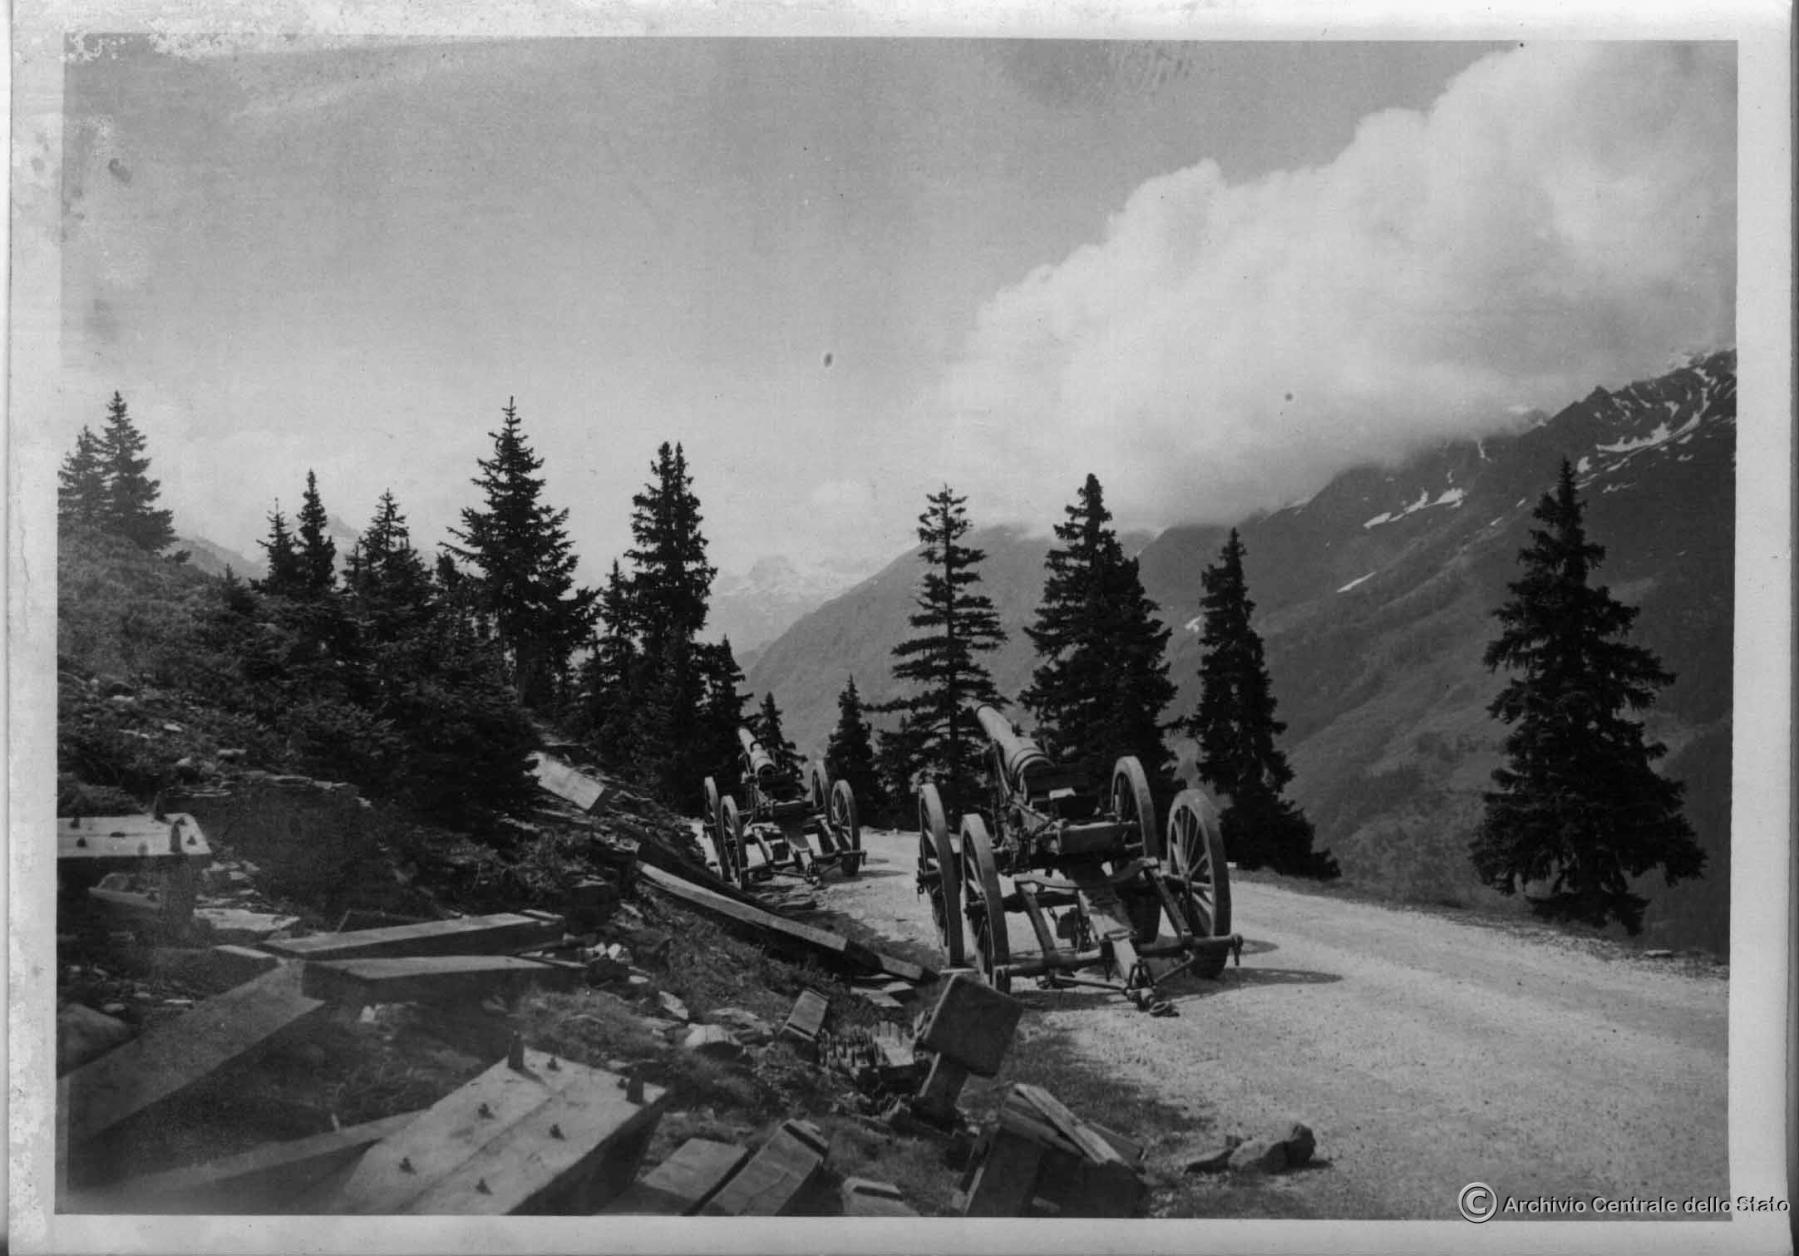 Ligne Maginot - 164° RAP - Pièce de 120 L mod 1878 de Bange - Pièce de 120 L mod 1878 de Bange appartenant à la 9° Bie du IV/164°RAP abandonnée sur la route du Mont-Cenis 
Photo prise par l'armée italienne